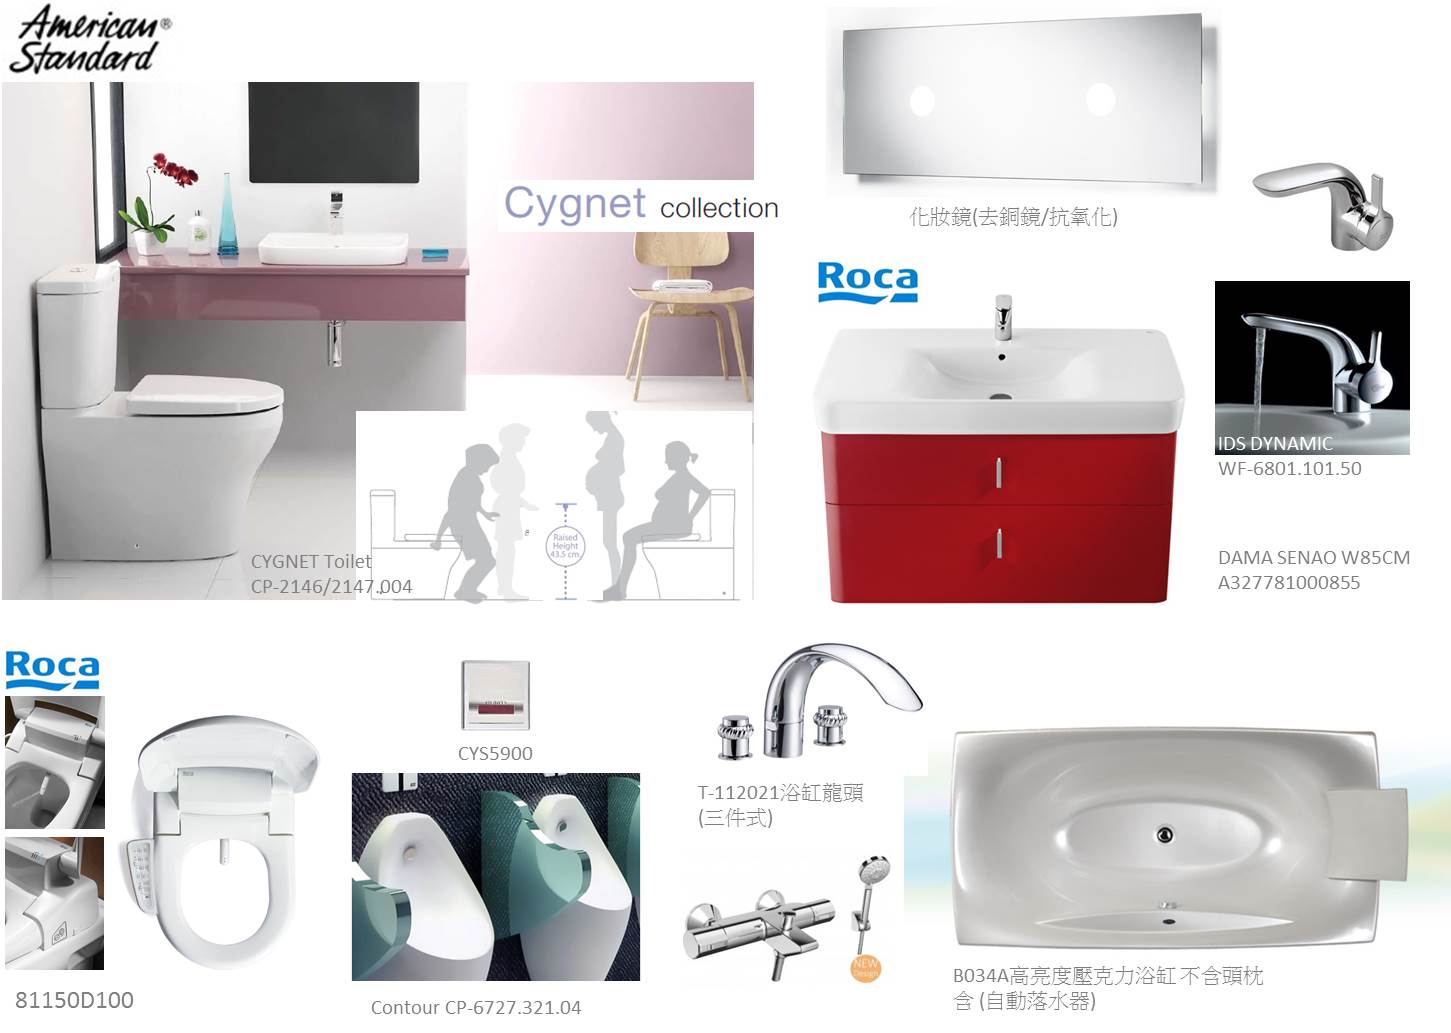  [ 最平價進口精品衛浴設備,最完整的衛浴浴室​專業3D規劃設計!! ]  - 20150408160103-480529757.jpg(圖)